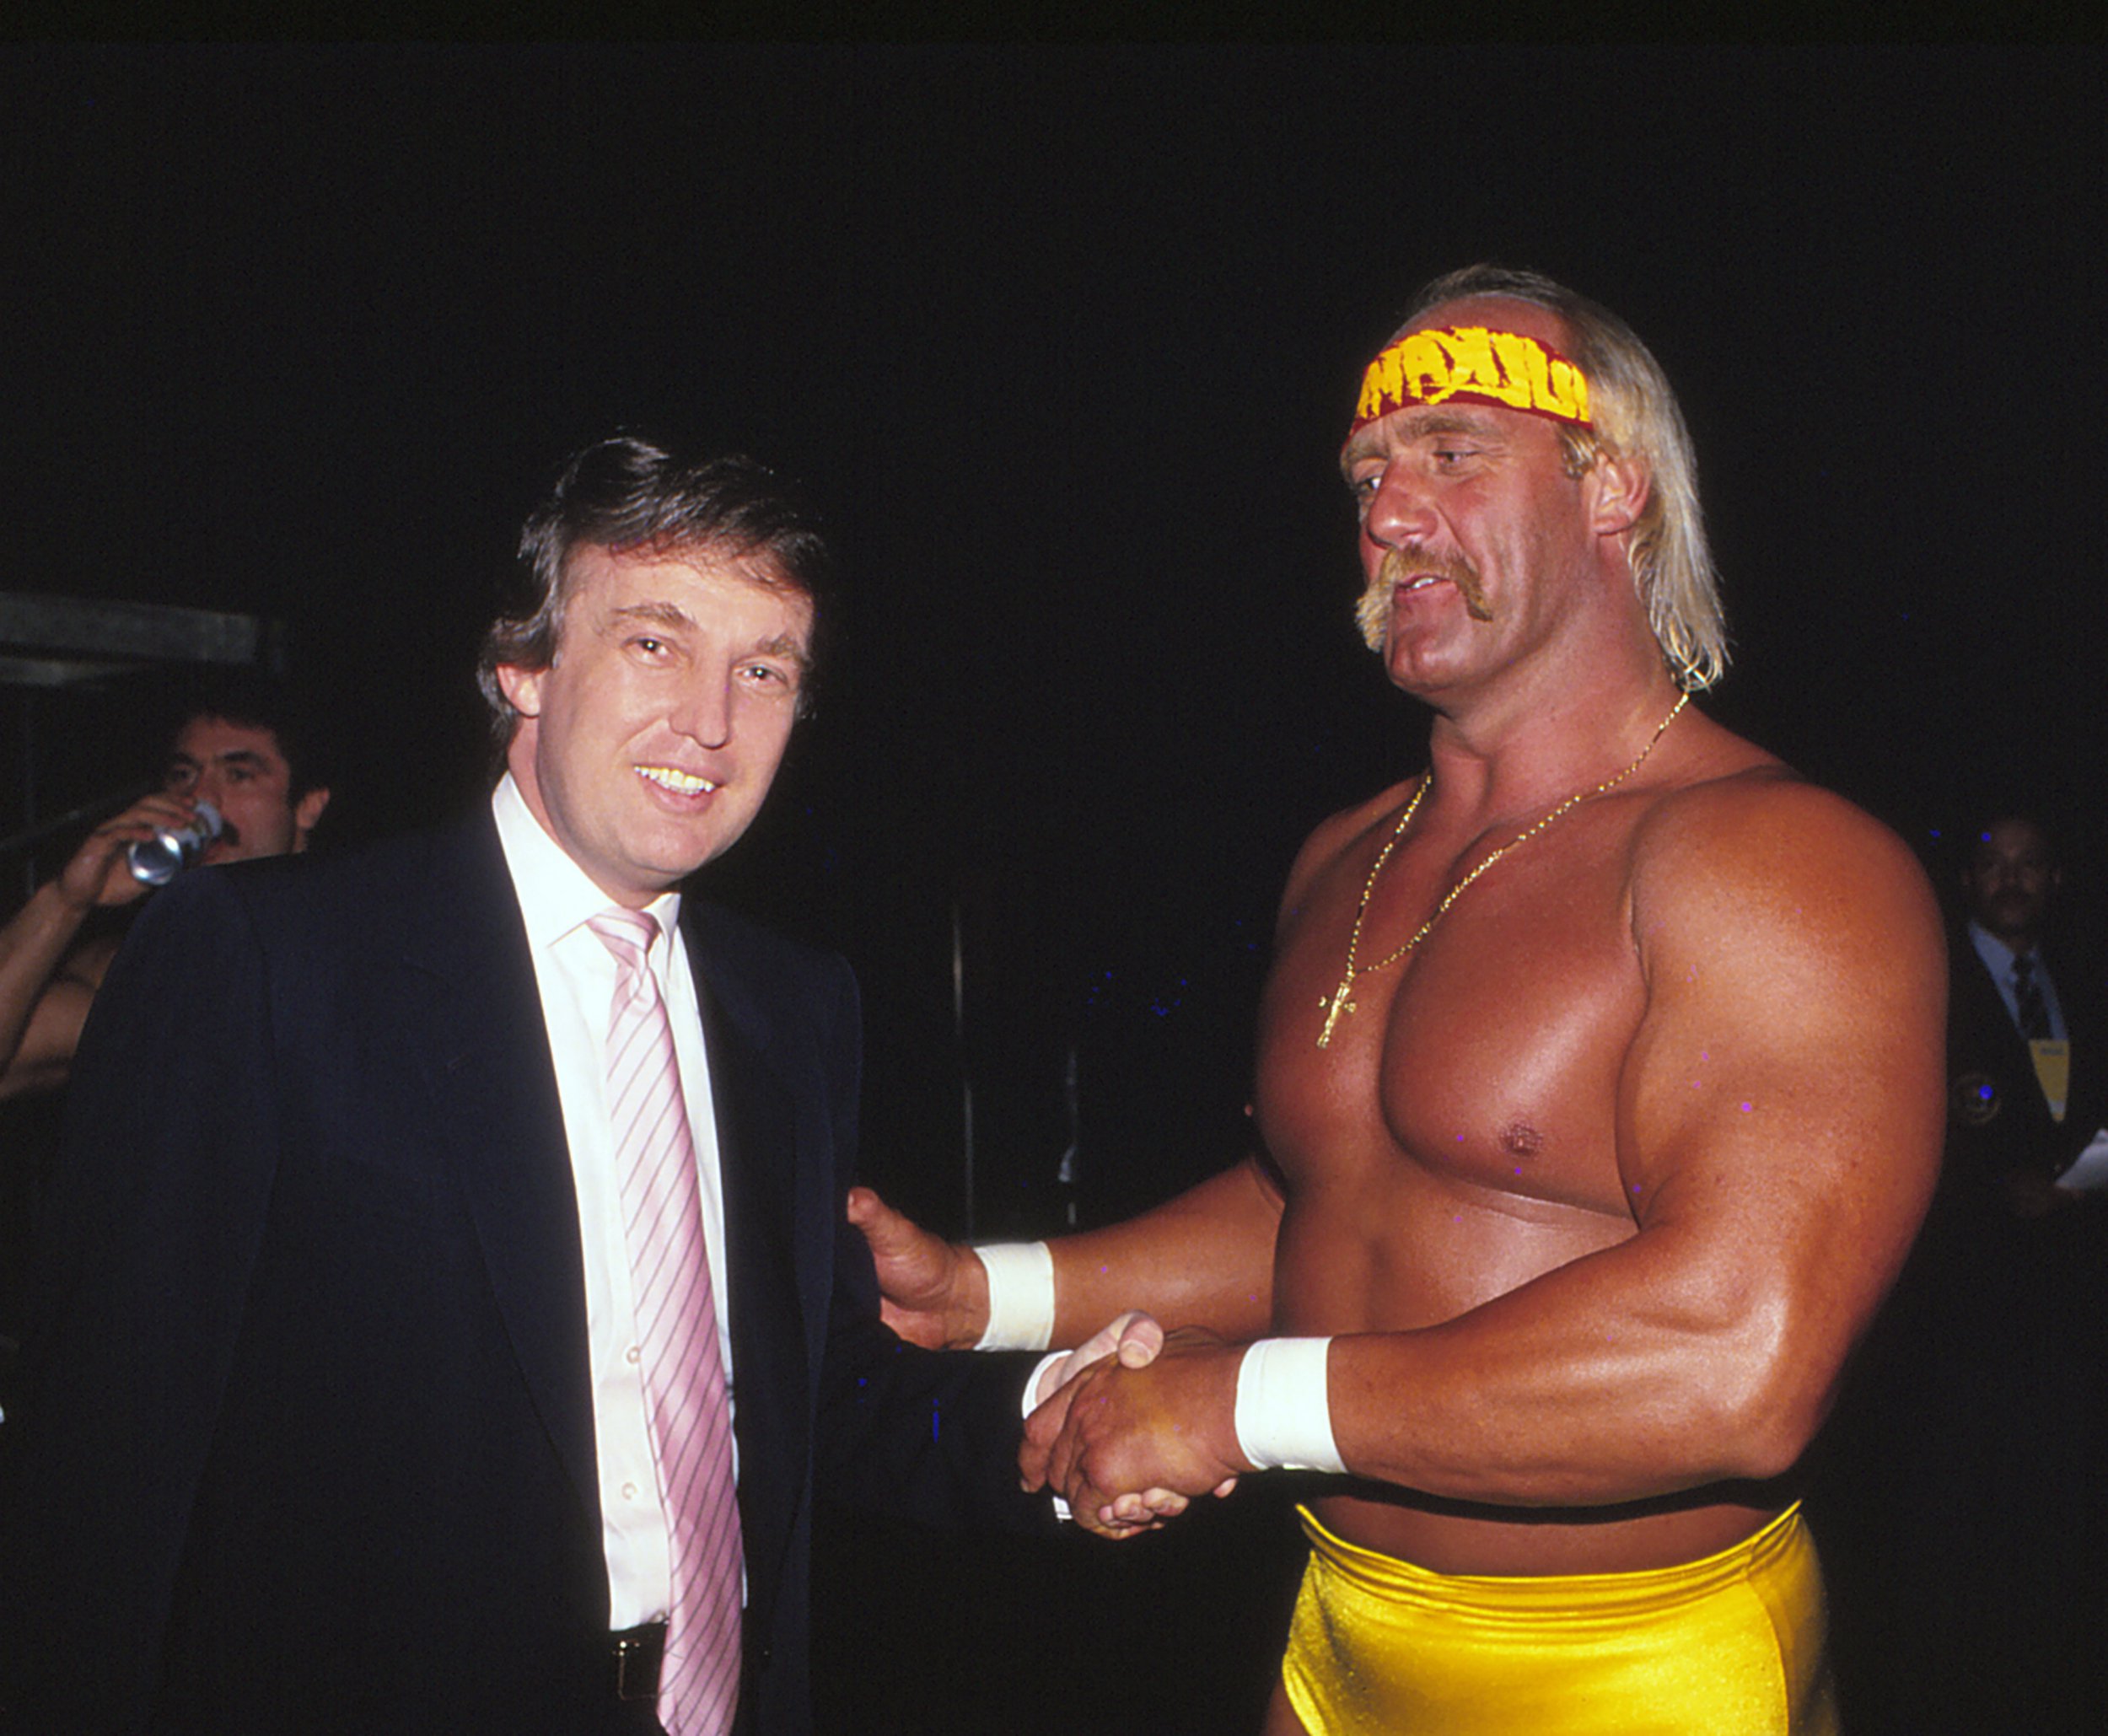 Hogan et Trump se connaissent depuis des décennies